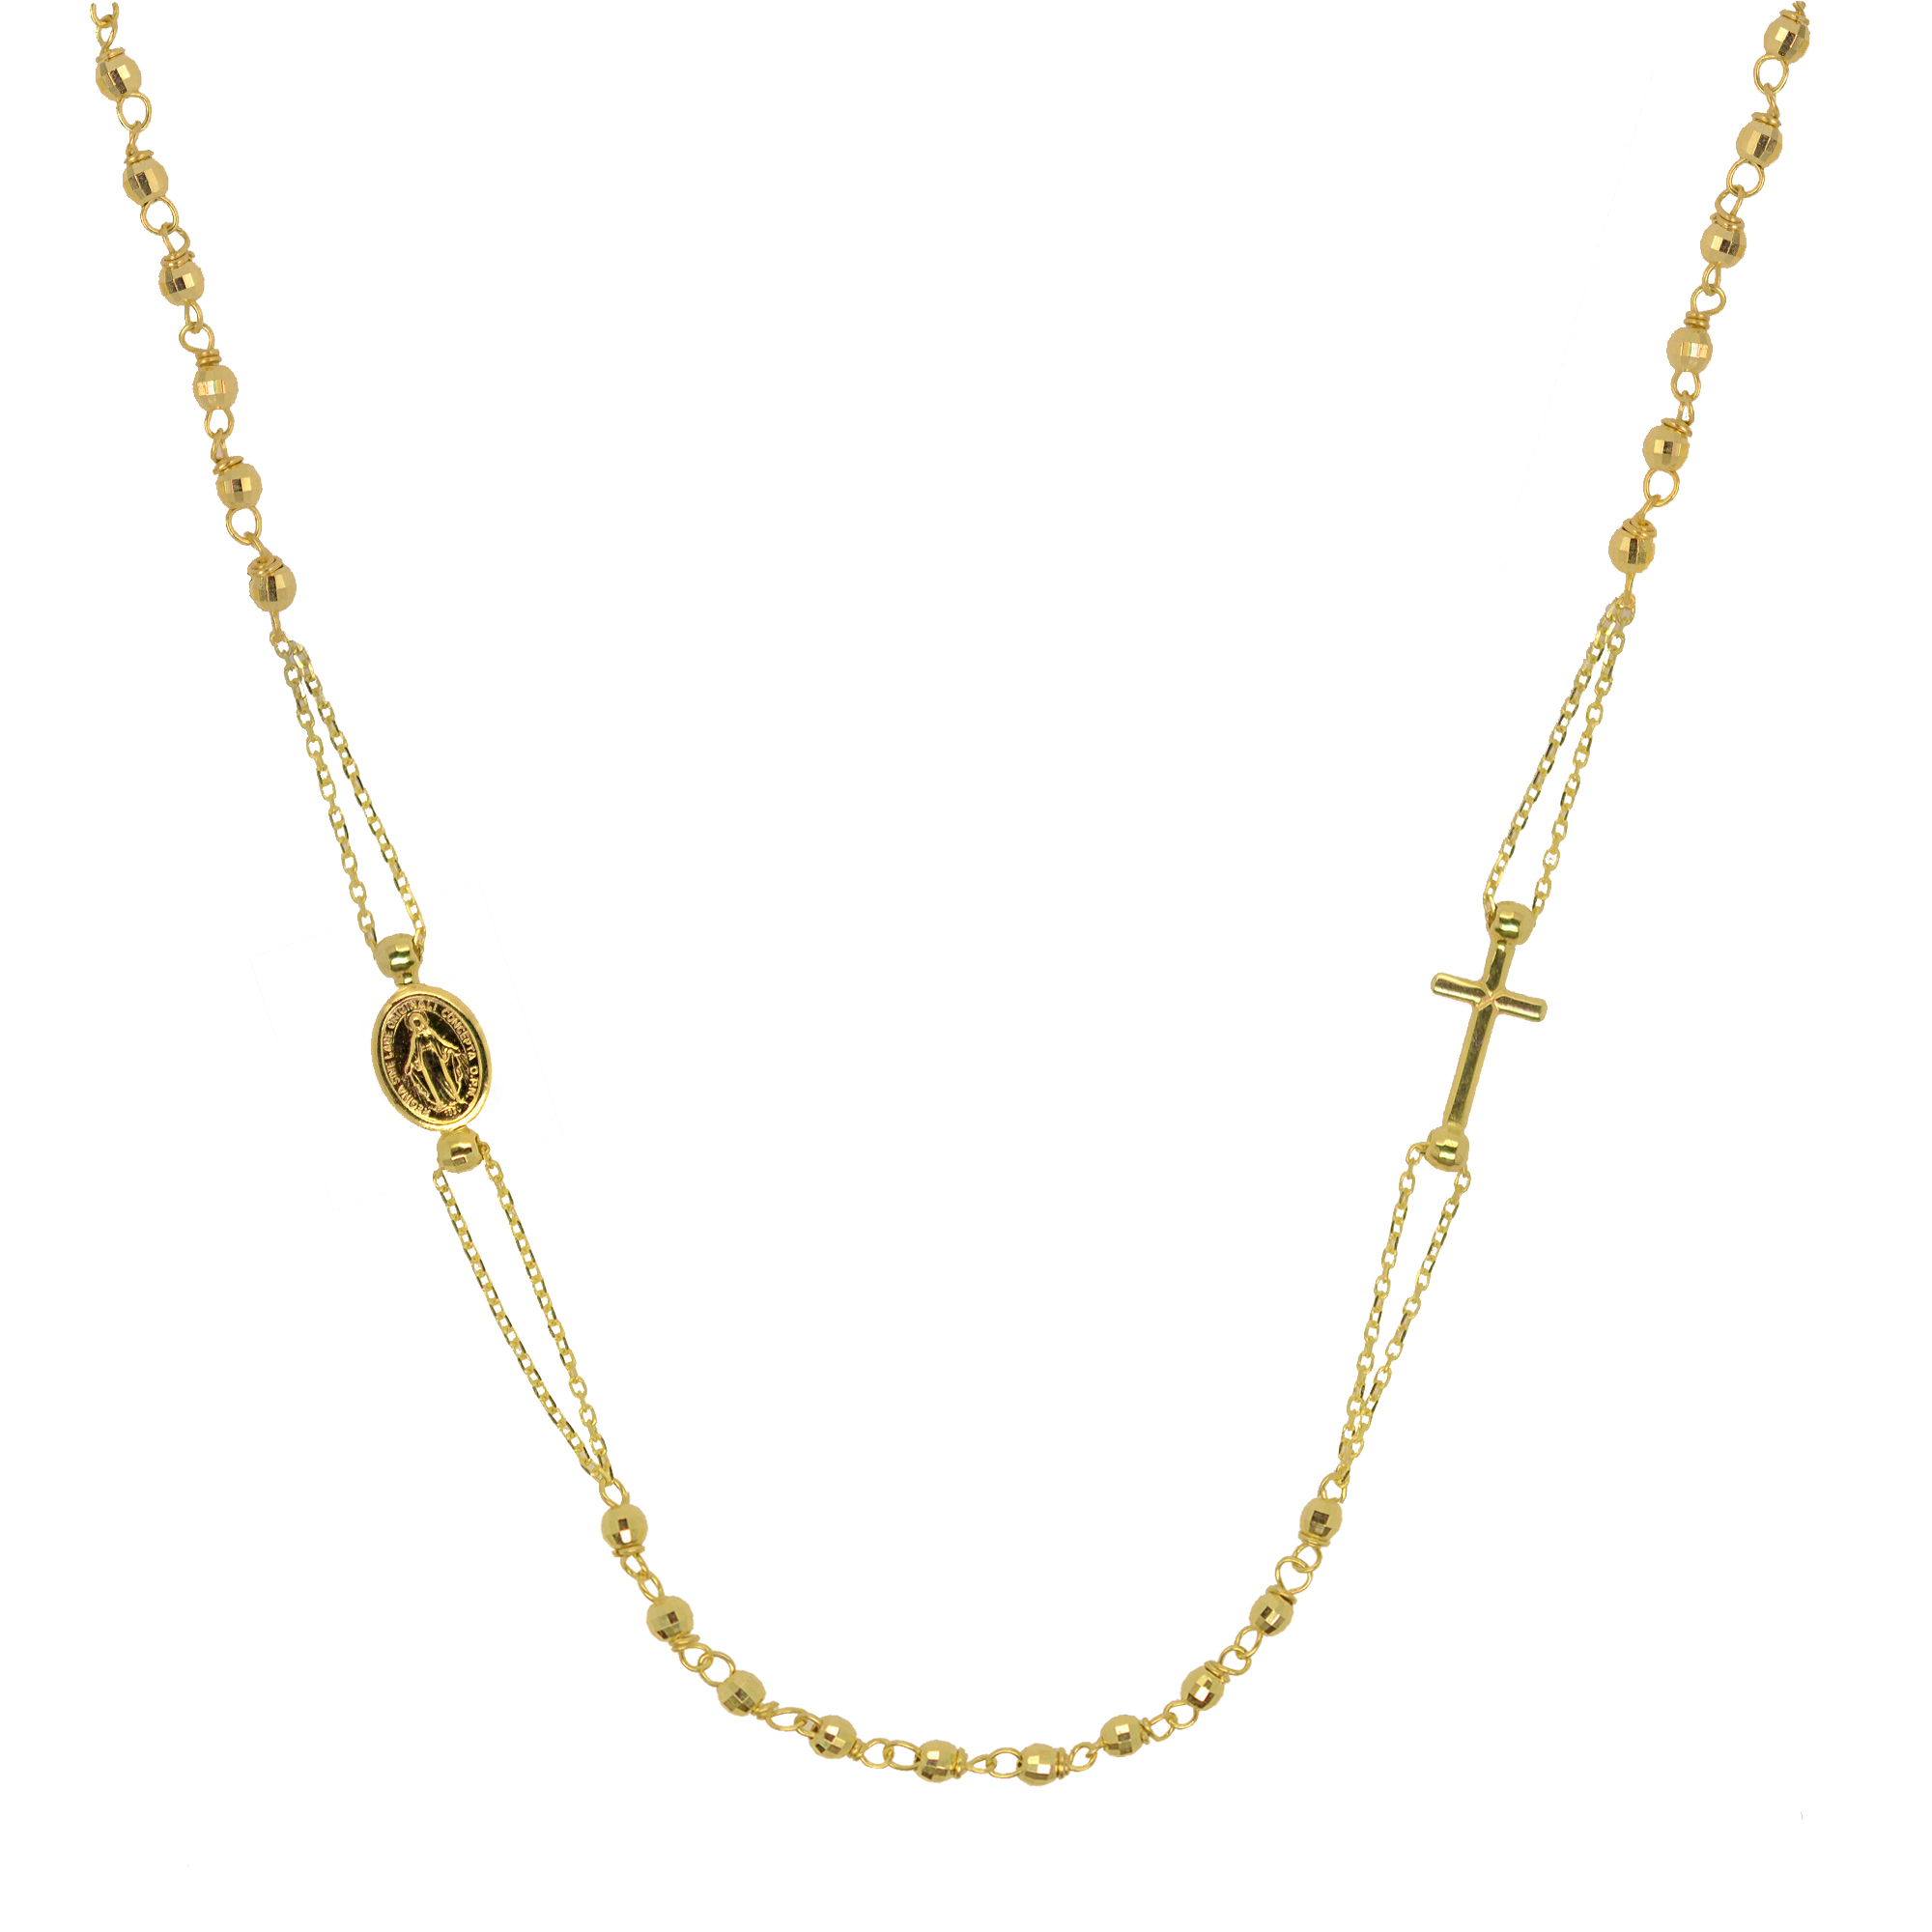 Evolution Group Zlatý 14 karátový náhrdelník růženec s křížem a medailonkem s Pannou Marií RŽ11 zlatý